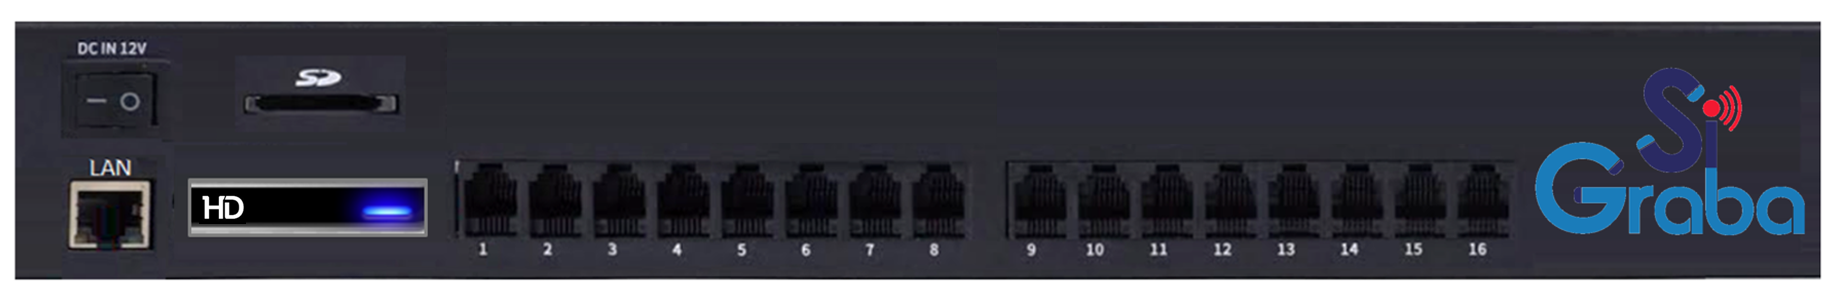 SiGraba con Micro Disco Duro SATA para almacenamiento de grabaciones además de ranura para Memoría MicroSD con puerto de Red Ethernet, Salida SMDR y administración por explorador Web de 16 Puertos